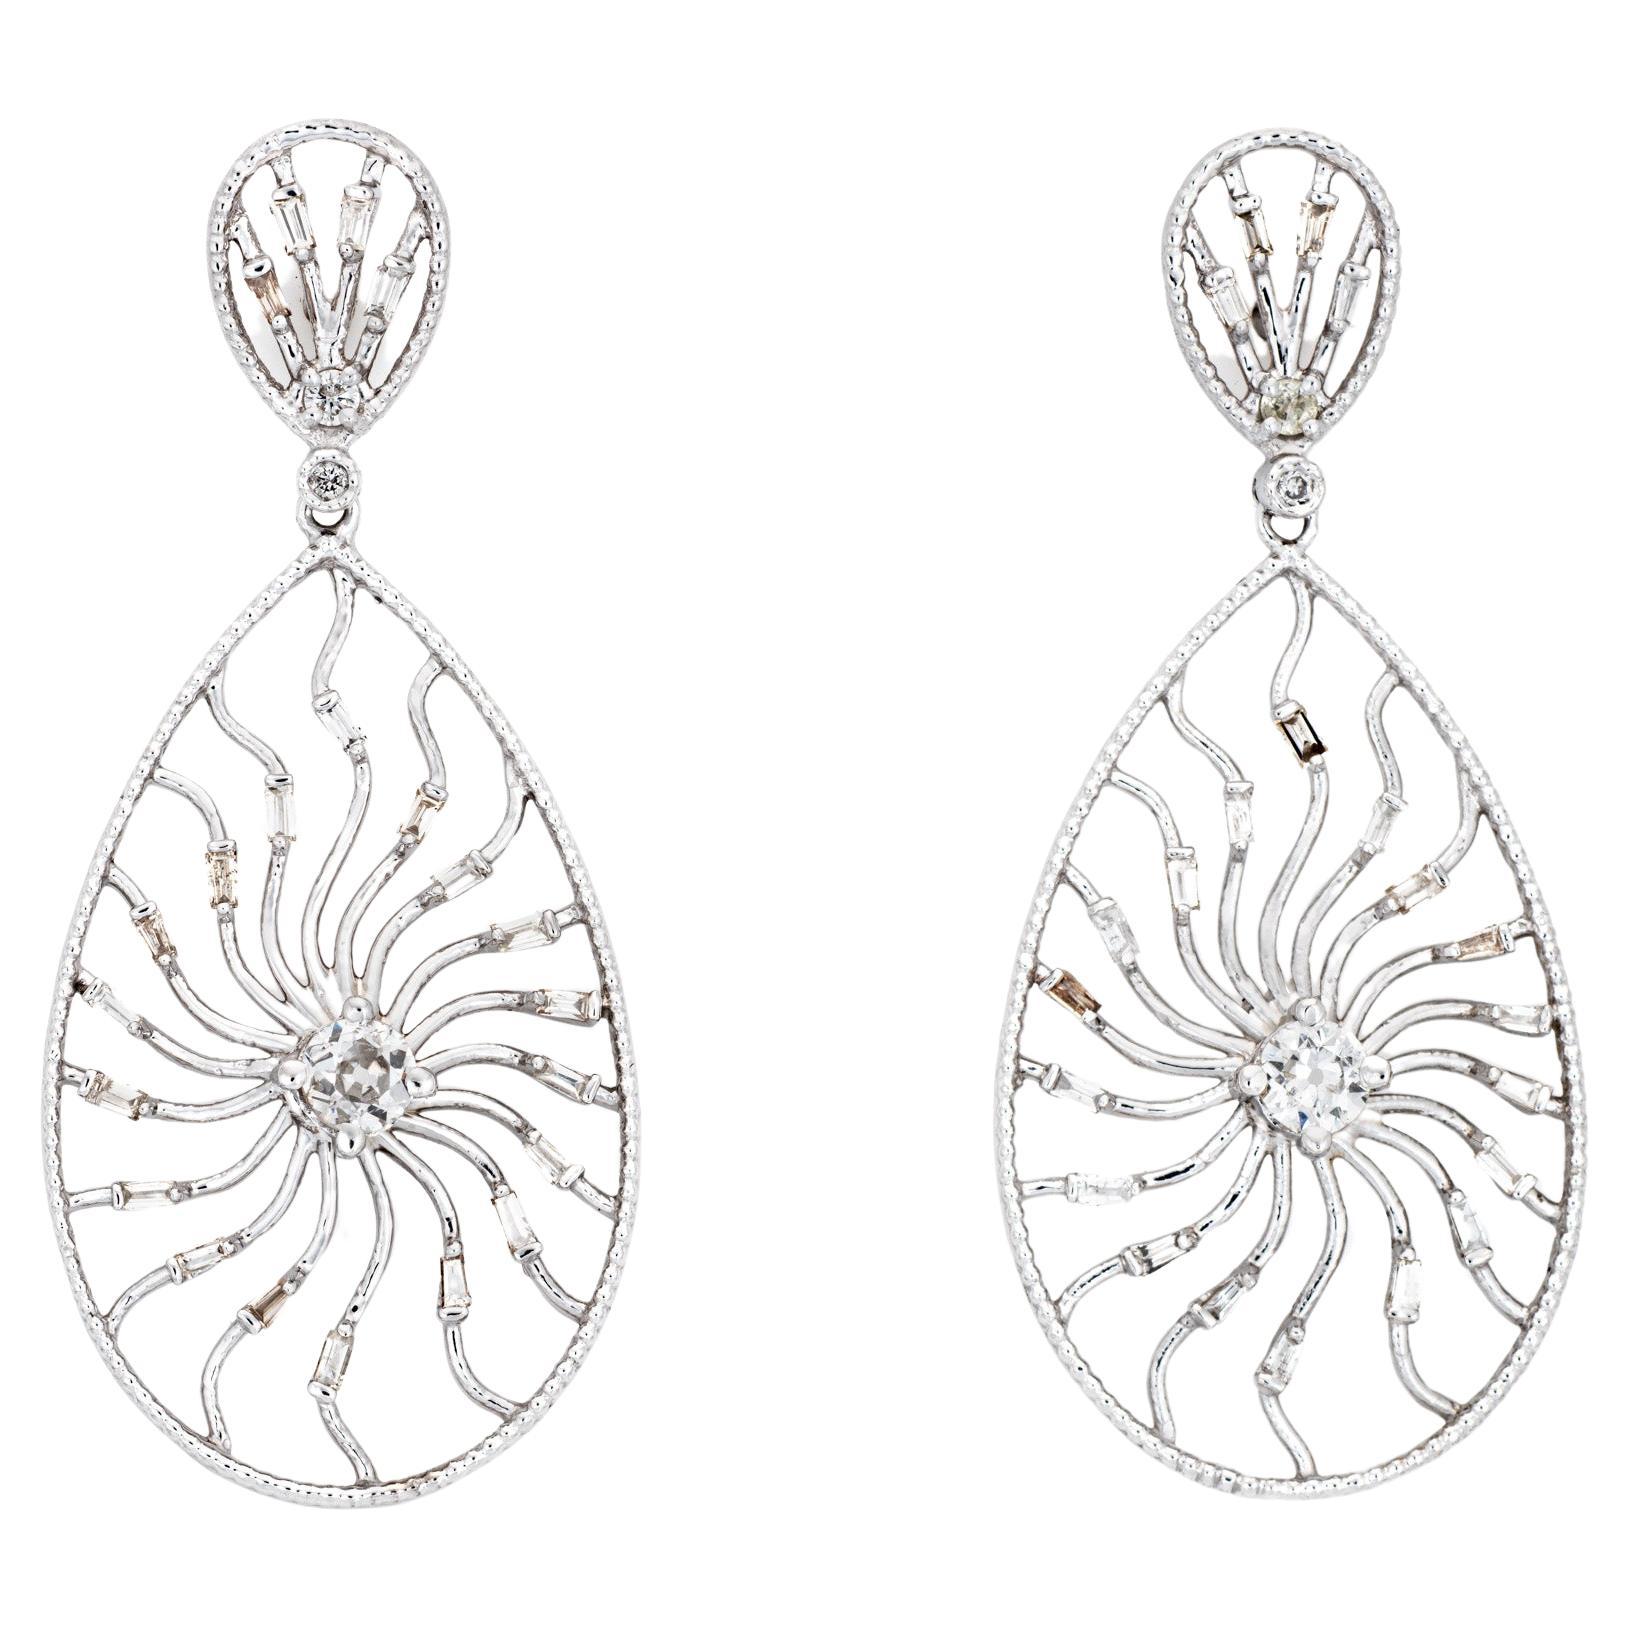 1.10ct Diamond Sunburst Earrings Vintage 14k White Gold Pear Drops Fine Jewelry